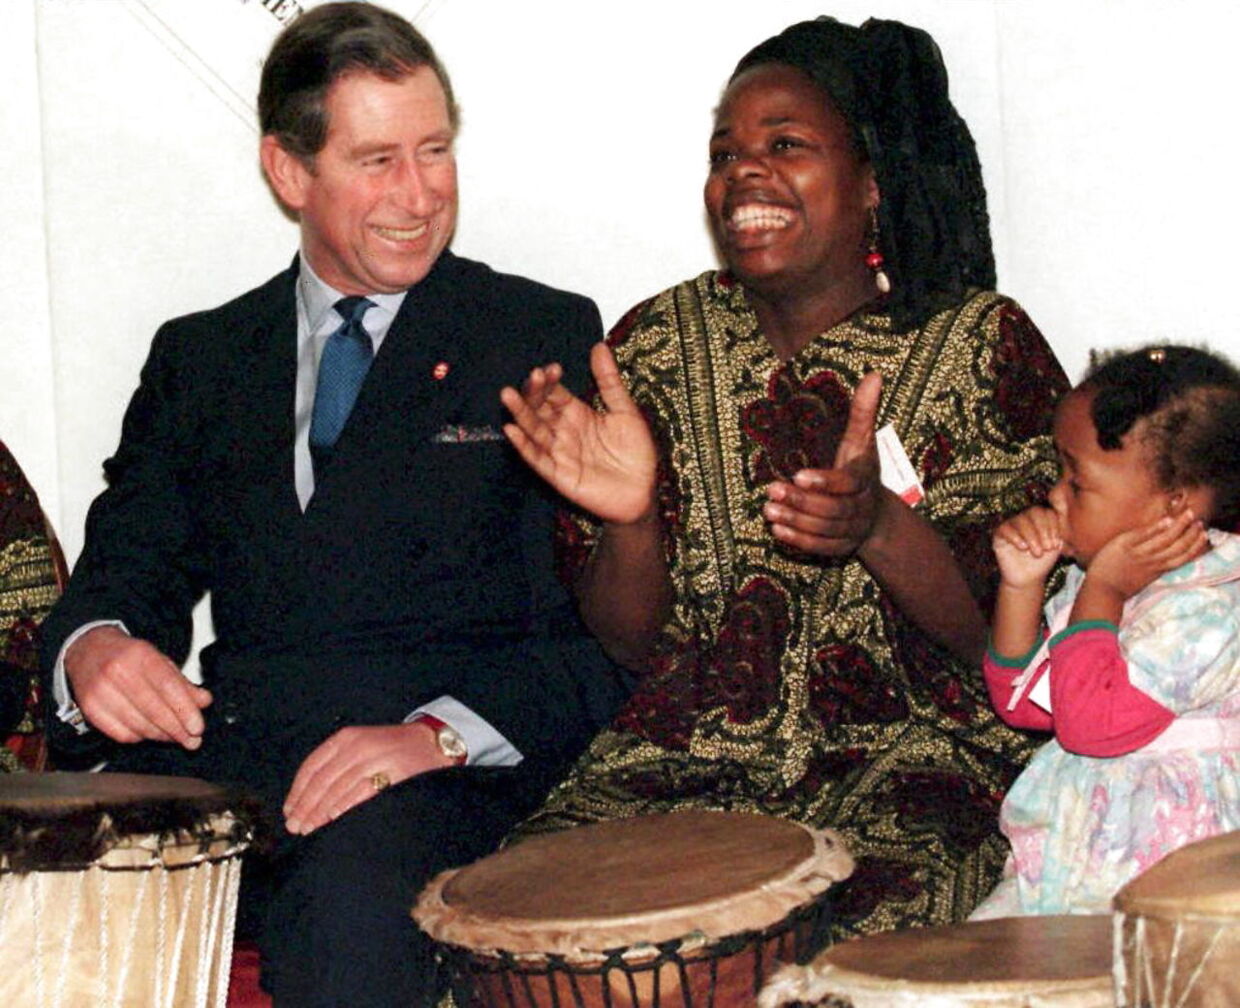 Kong Charles - tilbage i 1997, da han stadig var prins - sammen med netop Ngozi Fulani, hvor de spillede bongotrommer med aktivistens datter.